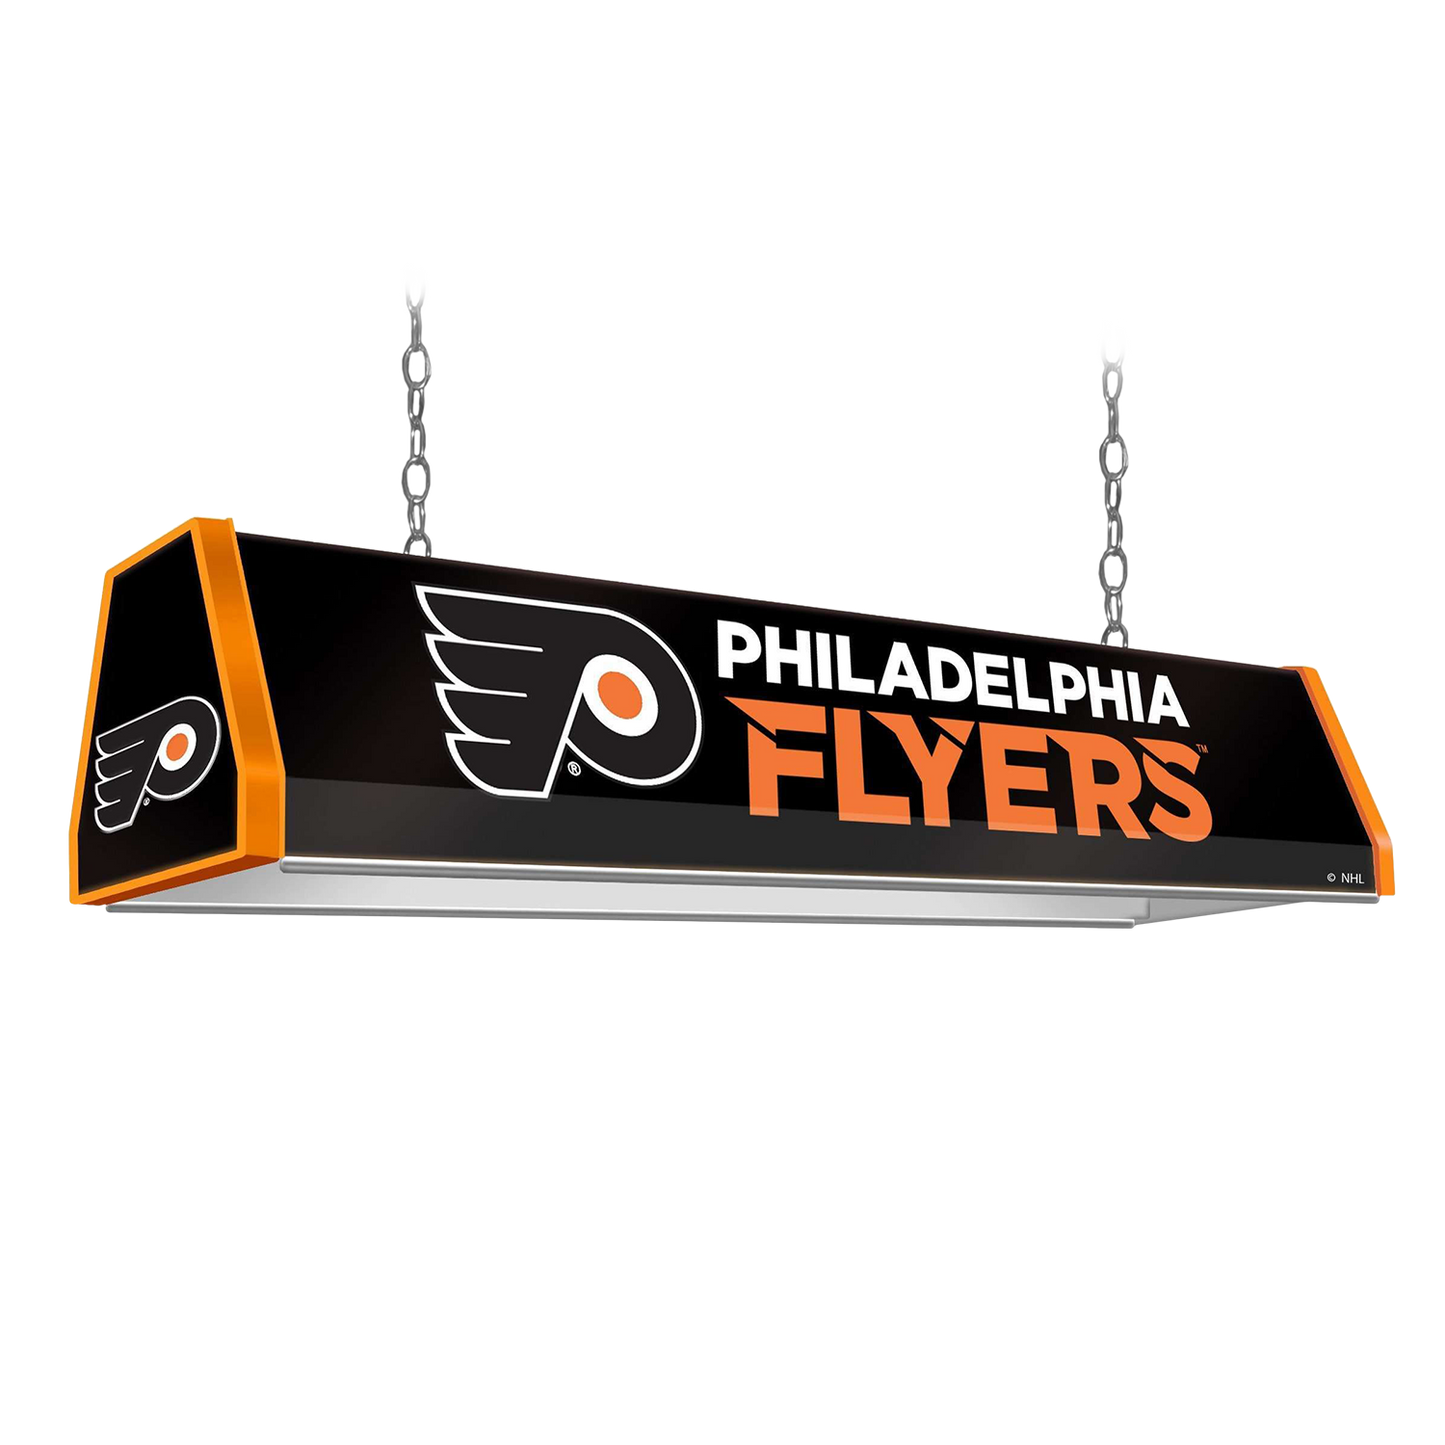 Philadelphia Flyers Standard Pool Table Light